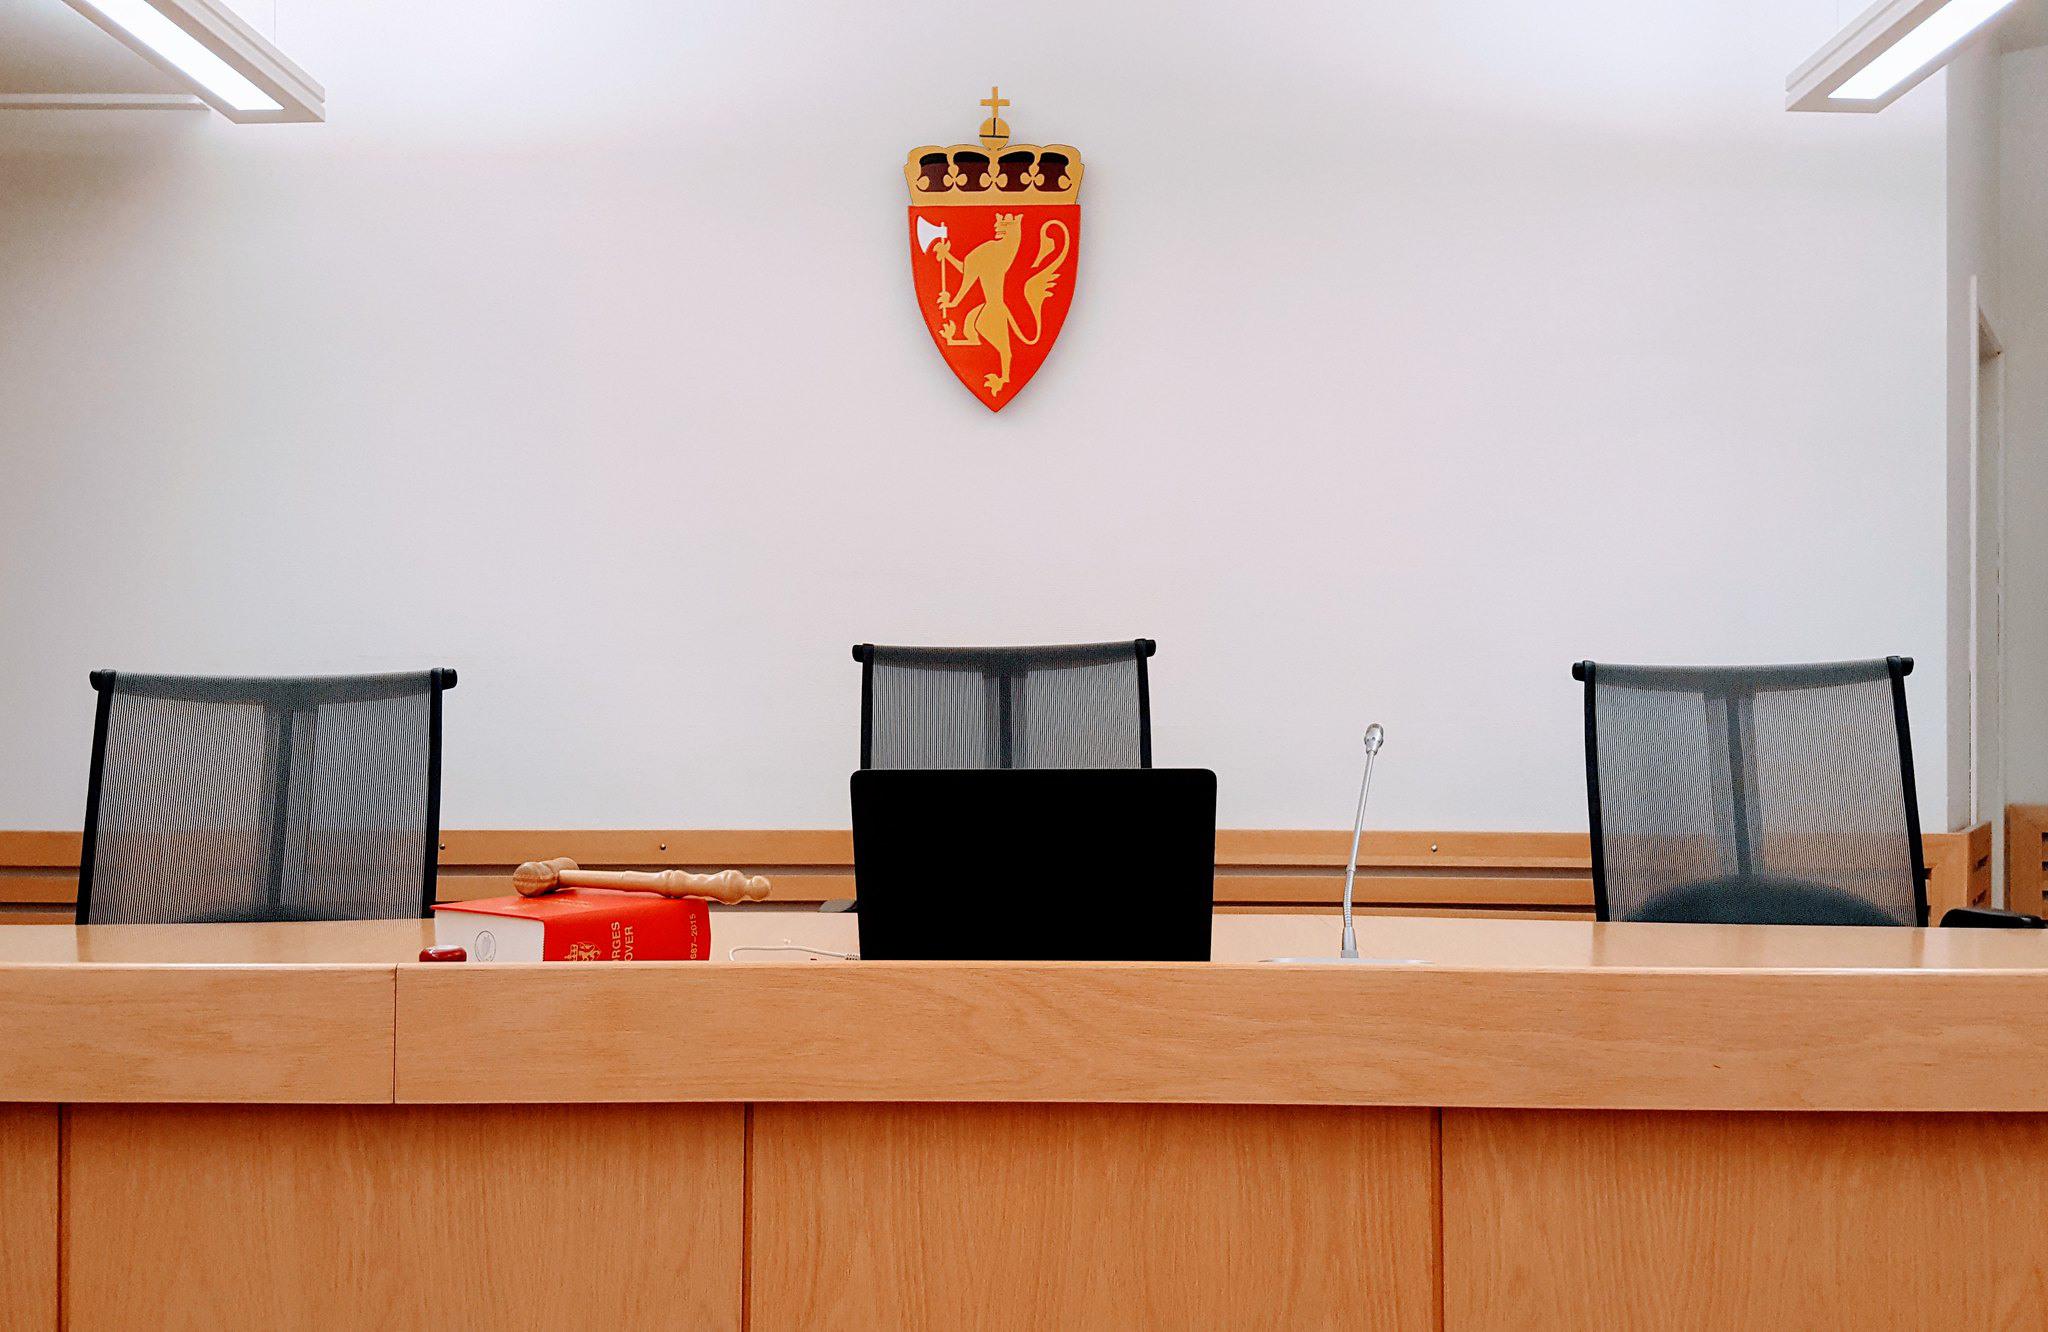 Правосудие, которому доверяет большинство, укрепляет демократию, считают в Швеции. Фото из шведского суда.